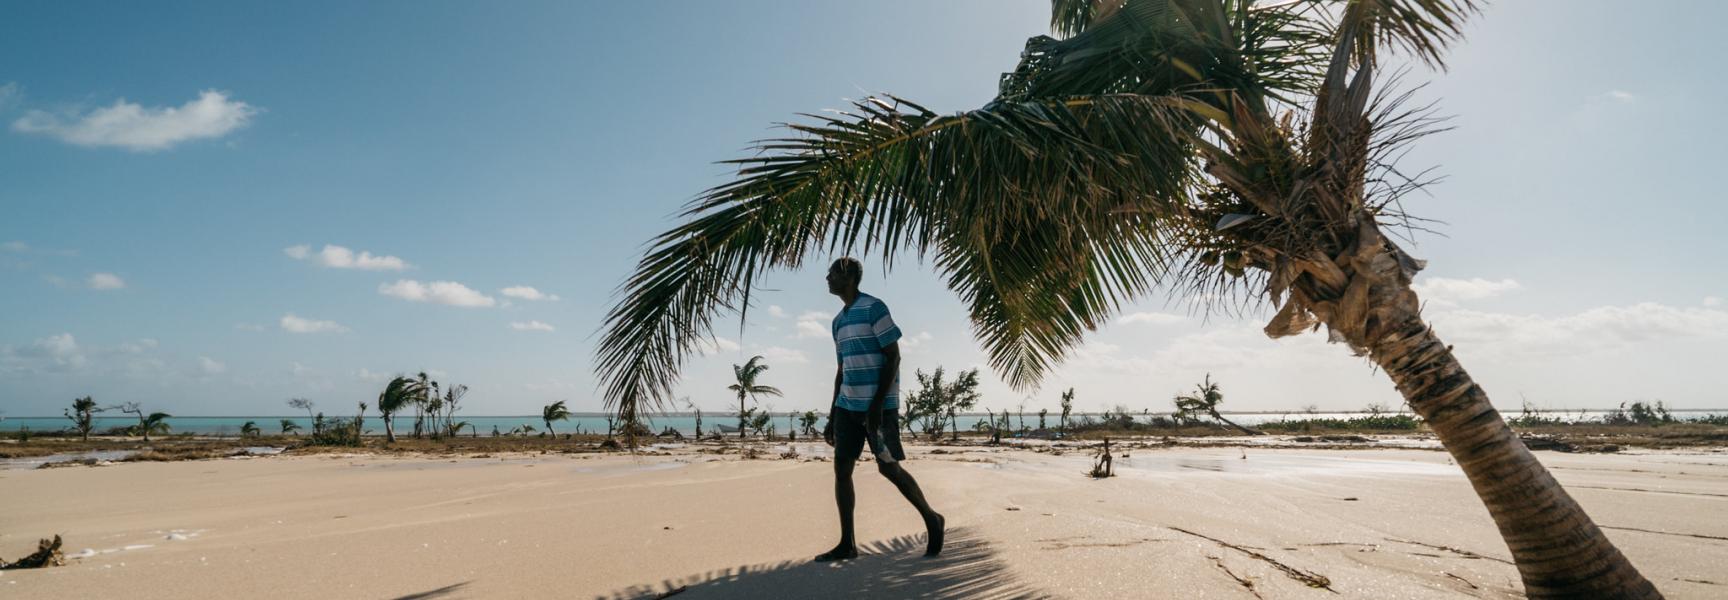 Une personne marchant sous un palmier sur une plage d'Antigua-et-Barbuda